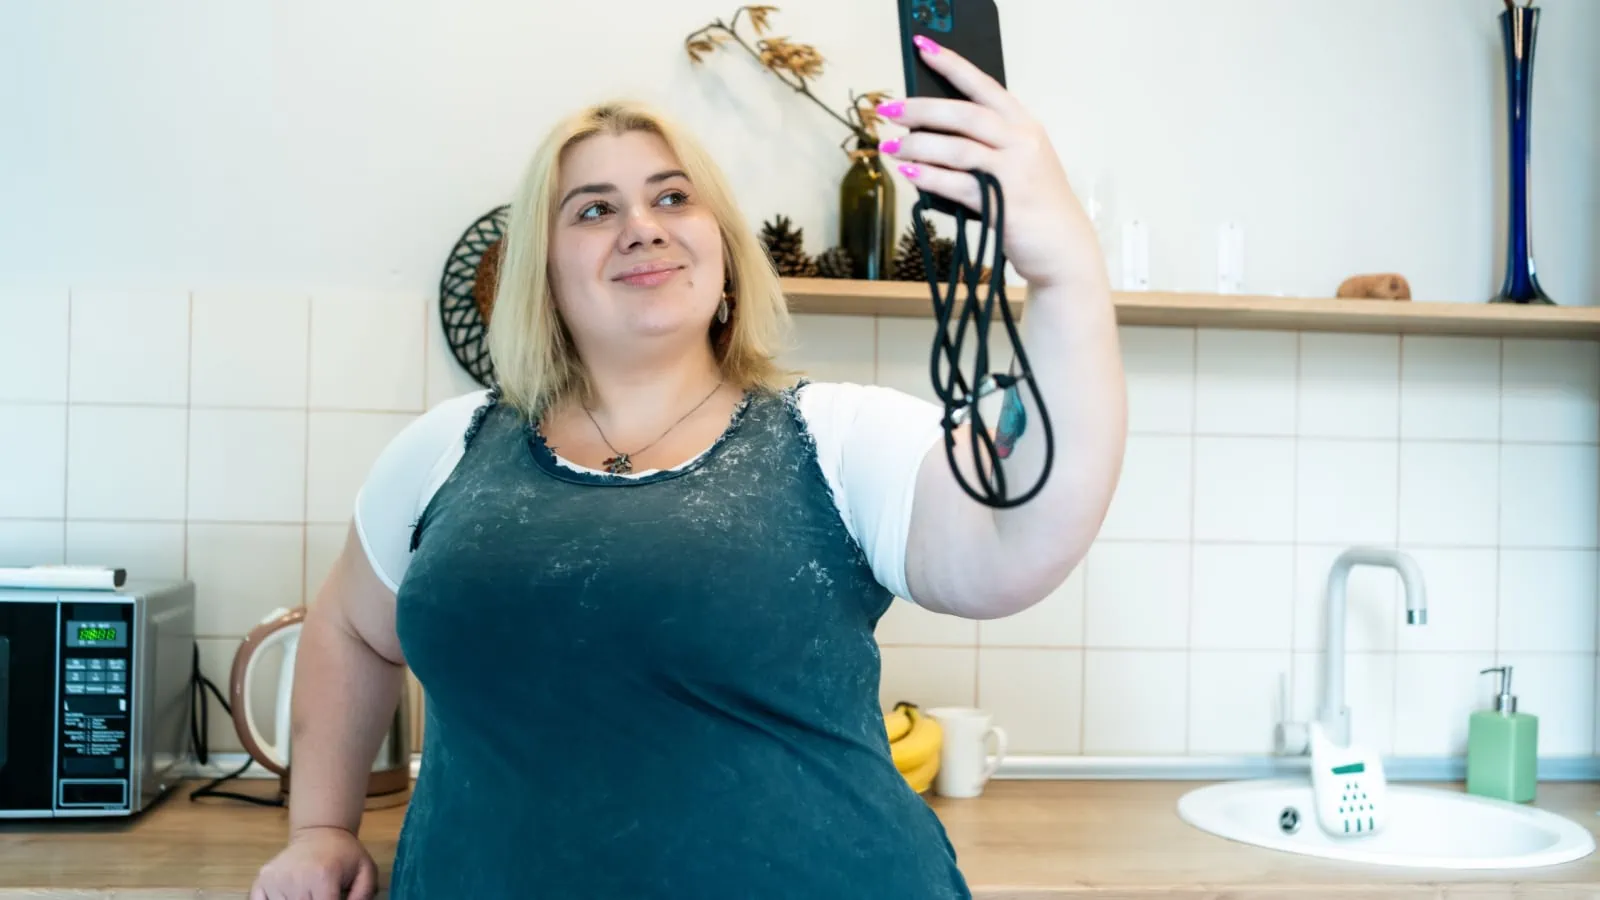 Fat woman taking a selfie